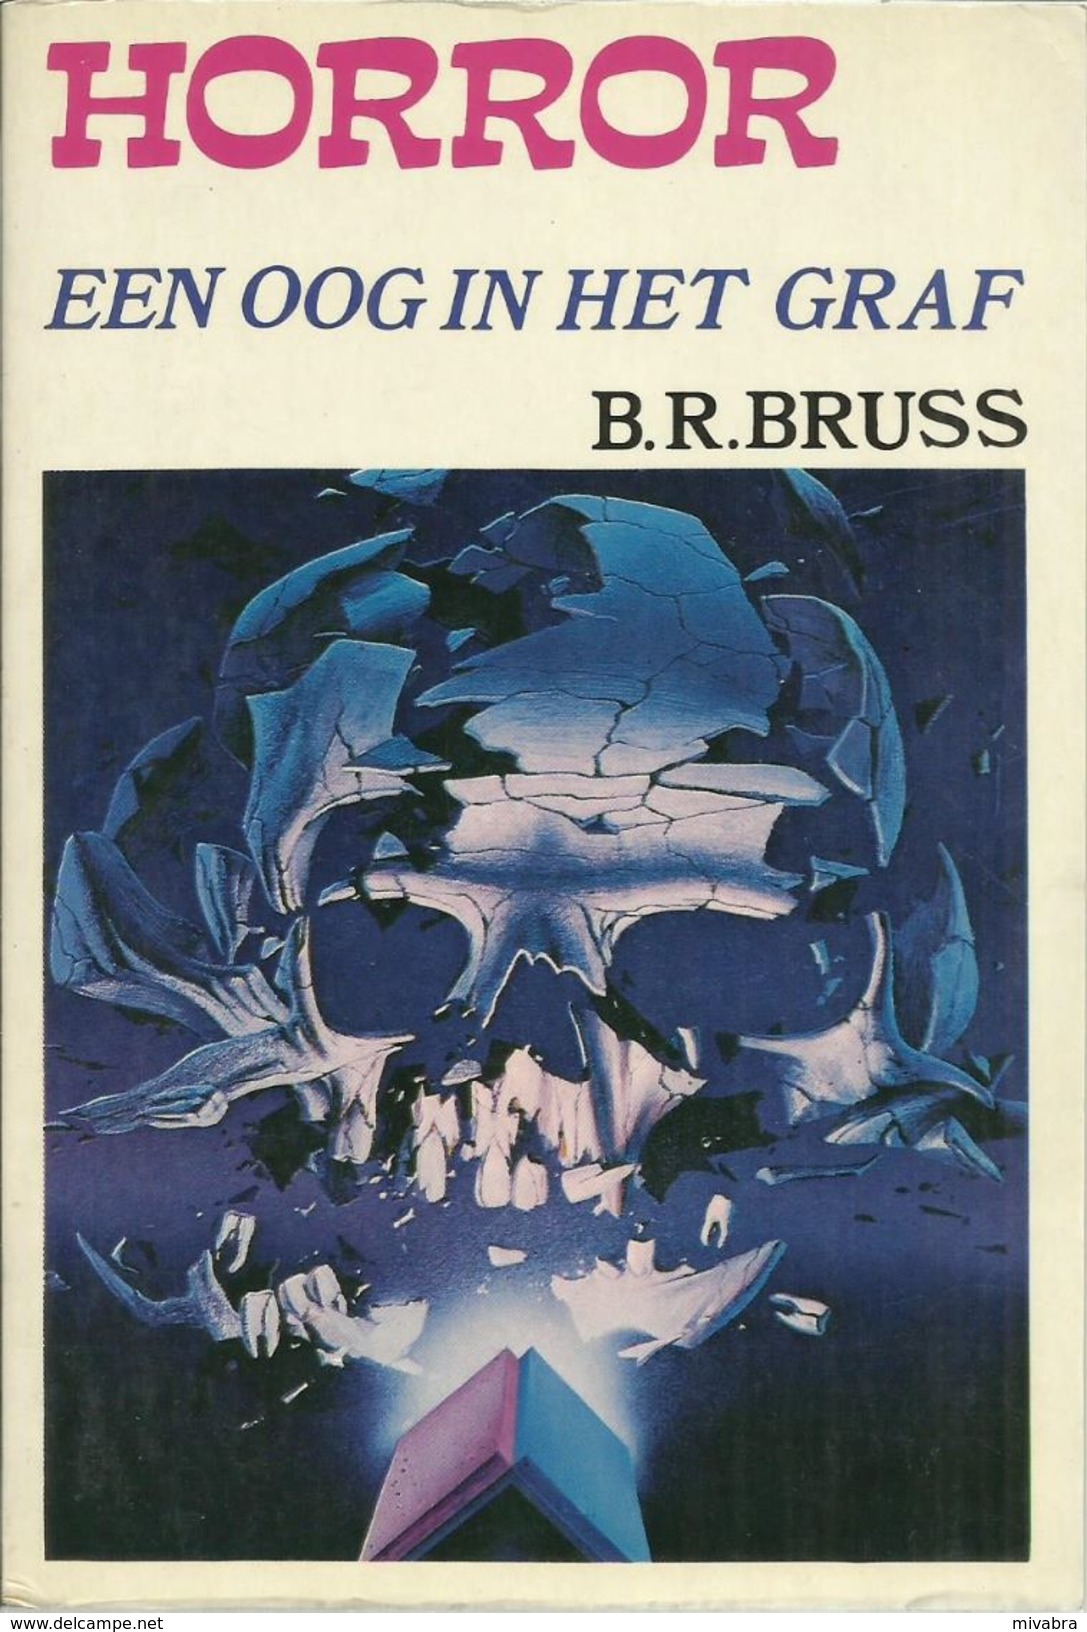 HORROR - EEN OOG IN HET GRAF - B. R. BRUSS - 1975 Uitgeverij DE SCHORPIOEN - Horrorgeschichten & Thriller